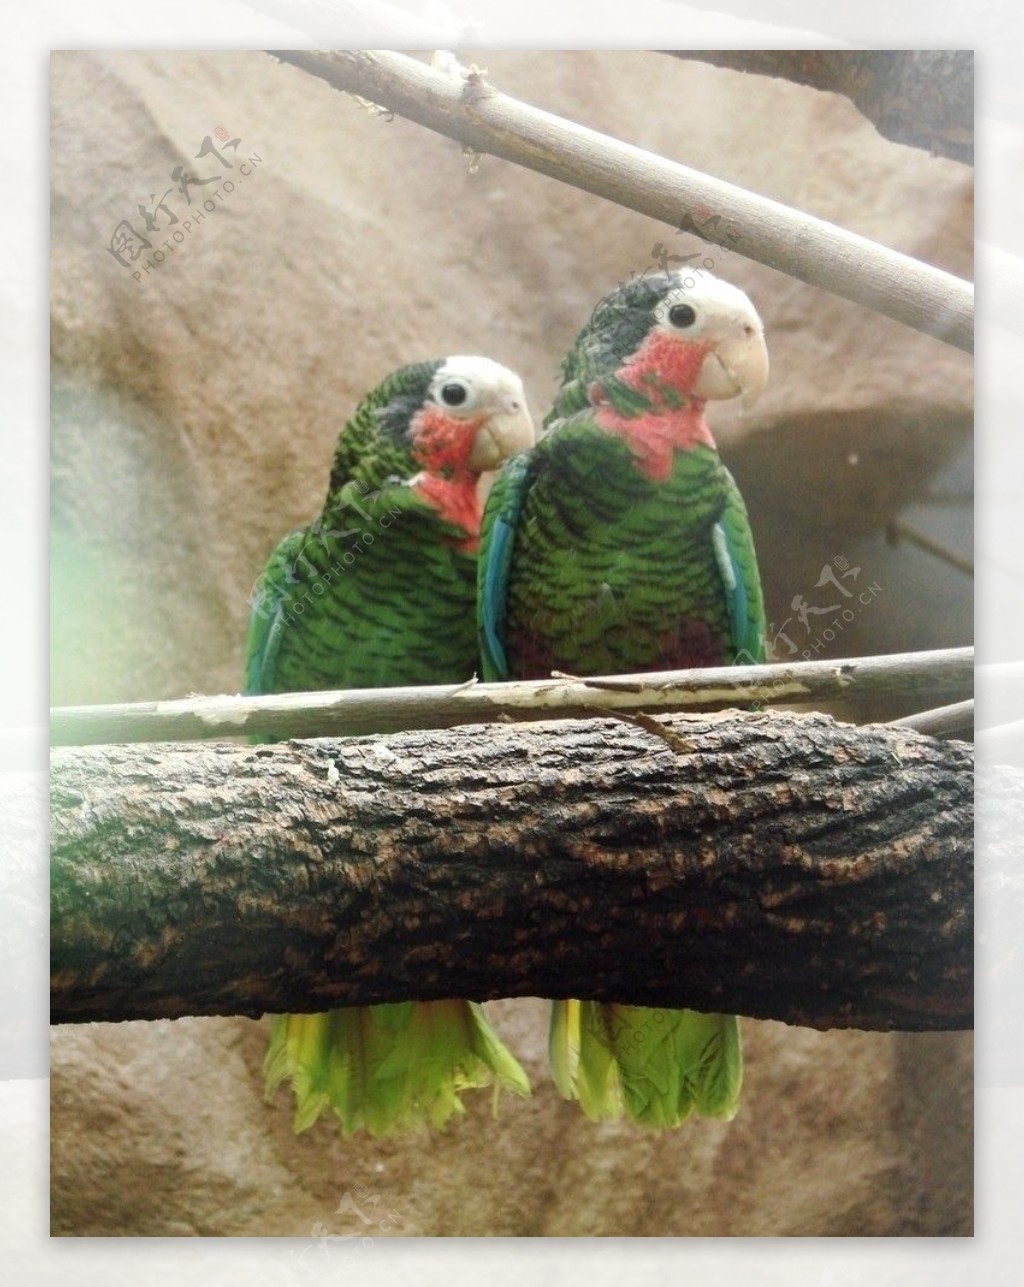 古巴亚马逊鹦鹉图片